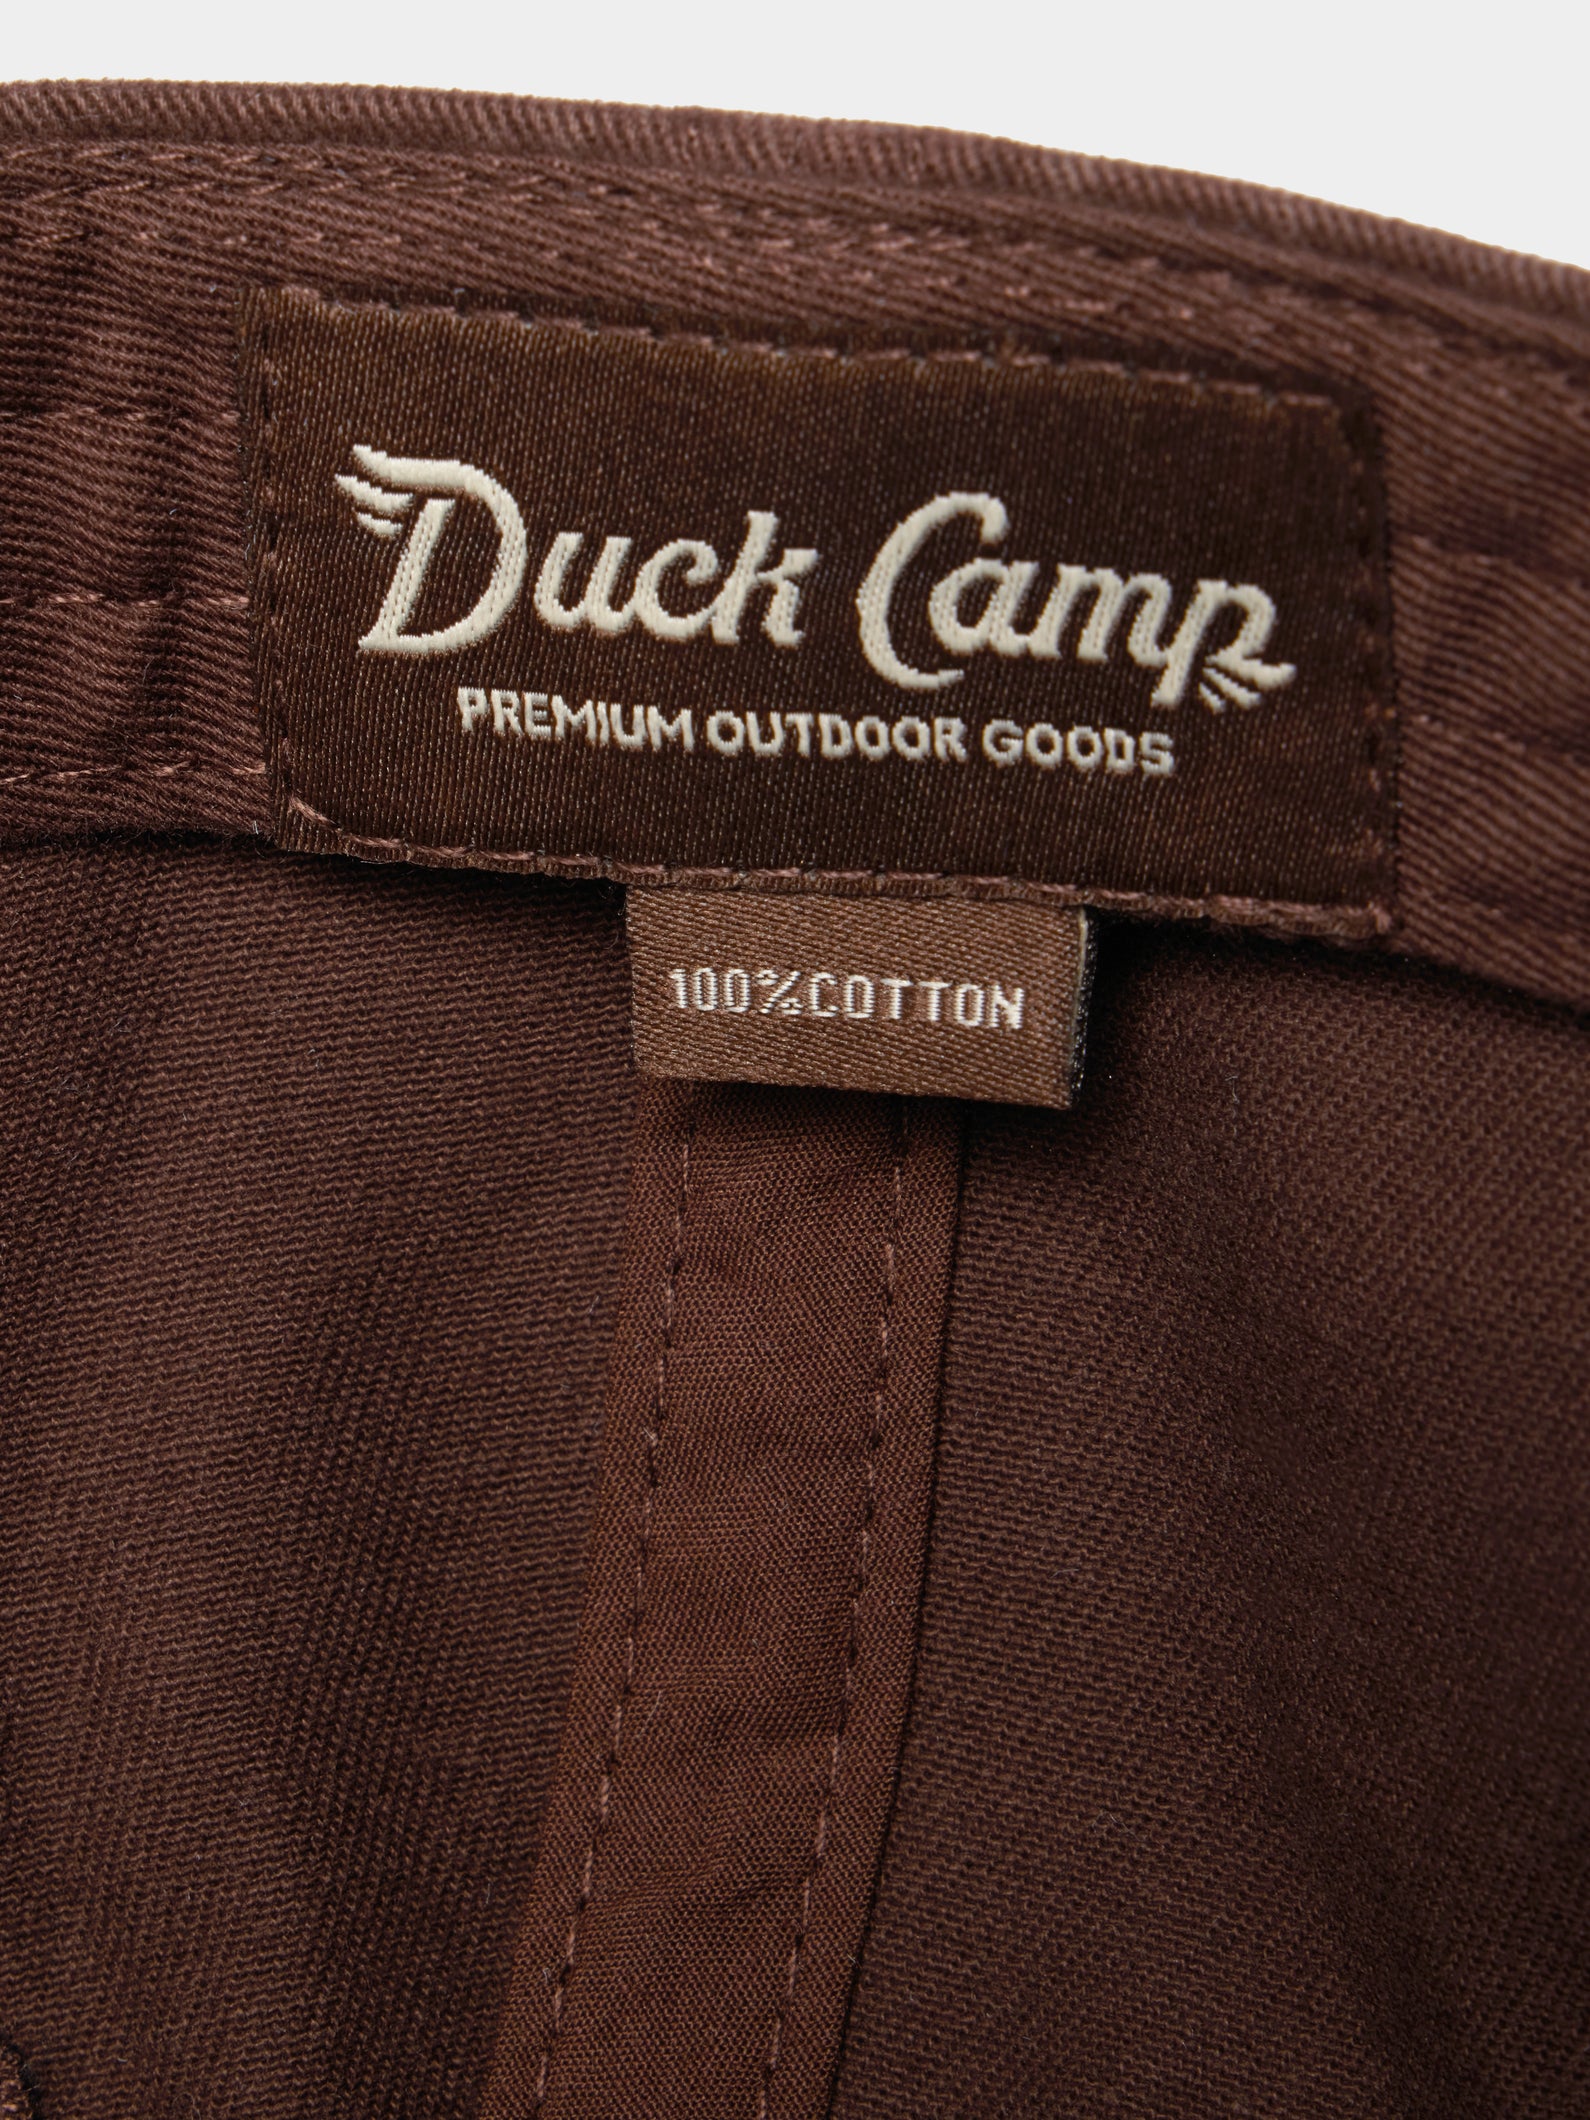 Duck Camp Logo Hat